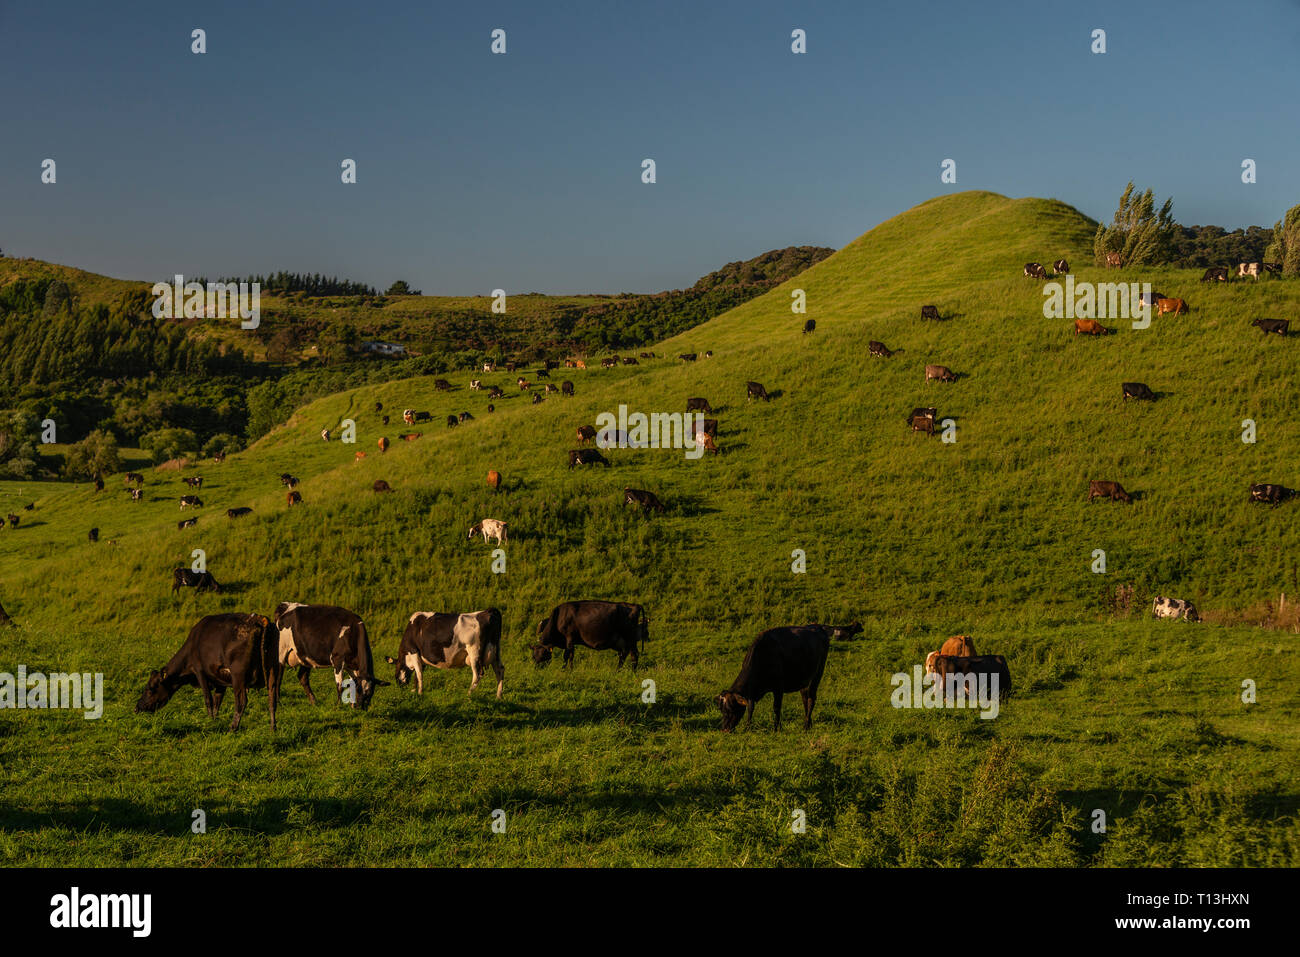 El pastoreo de ganado en un paisaje típico de las zonas rurales de Nueva Zelandia. Las ondulantes colinas de limo son posibles evidencias de antiguas inundaciones. Foto de stock